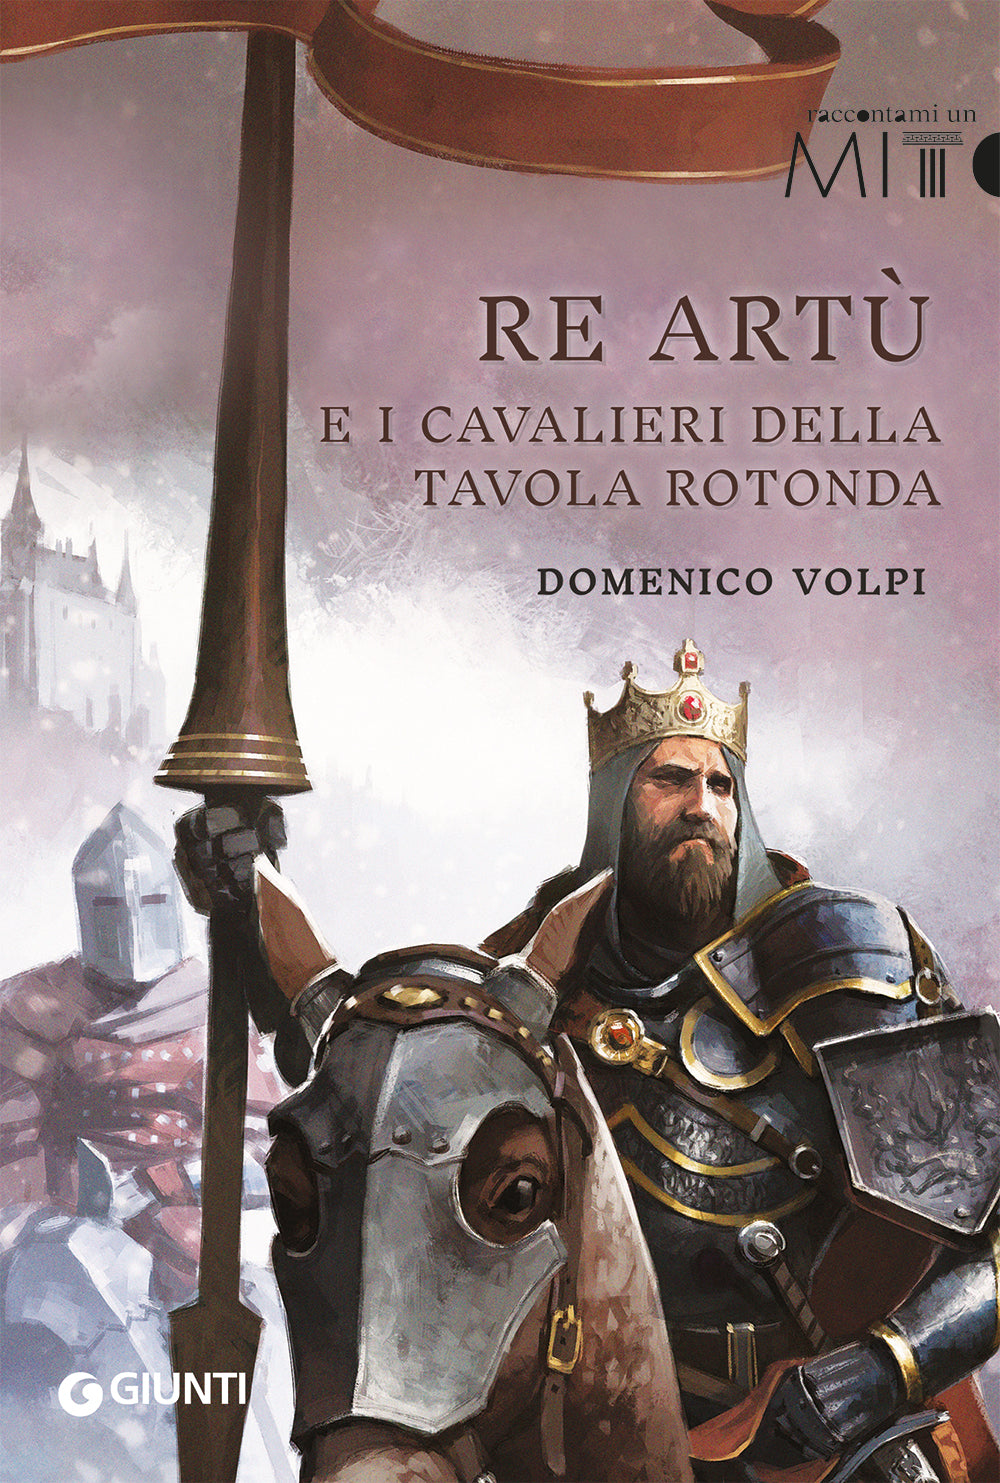 Re Artù e i cavalieri della tavola rotonda, Domenico Volpi